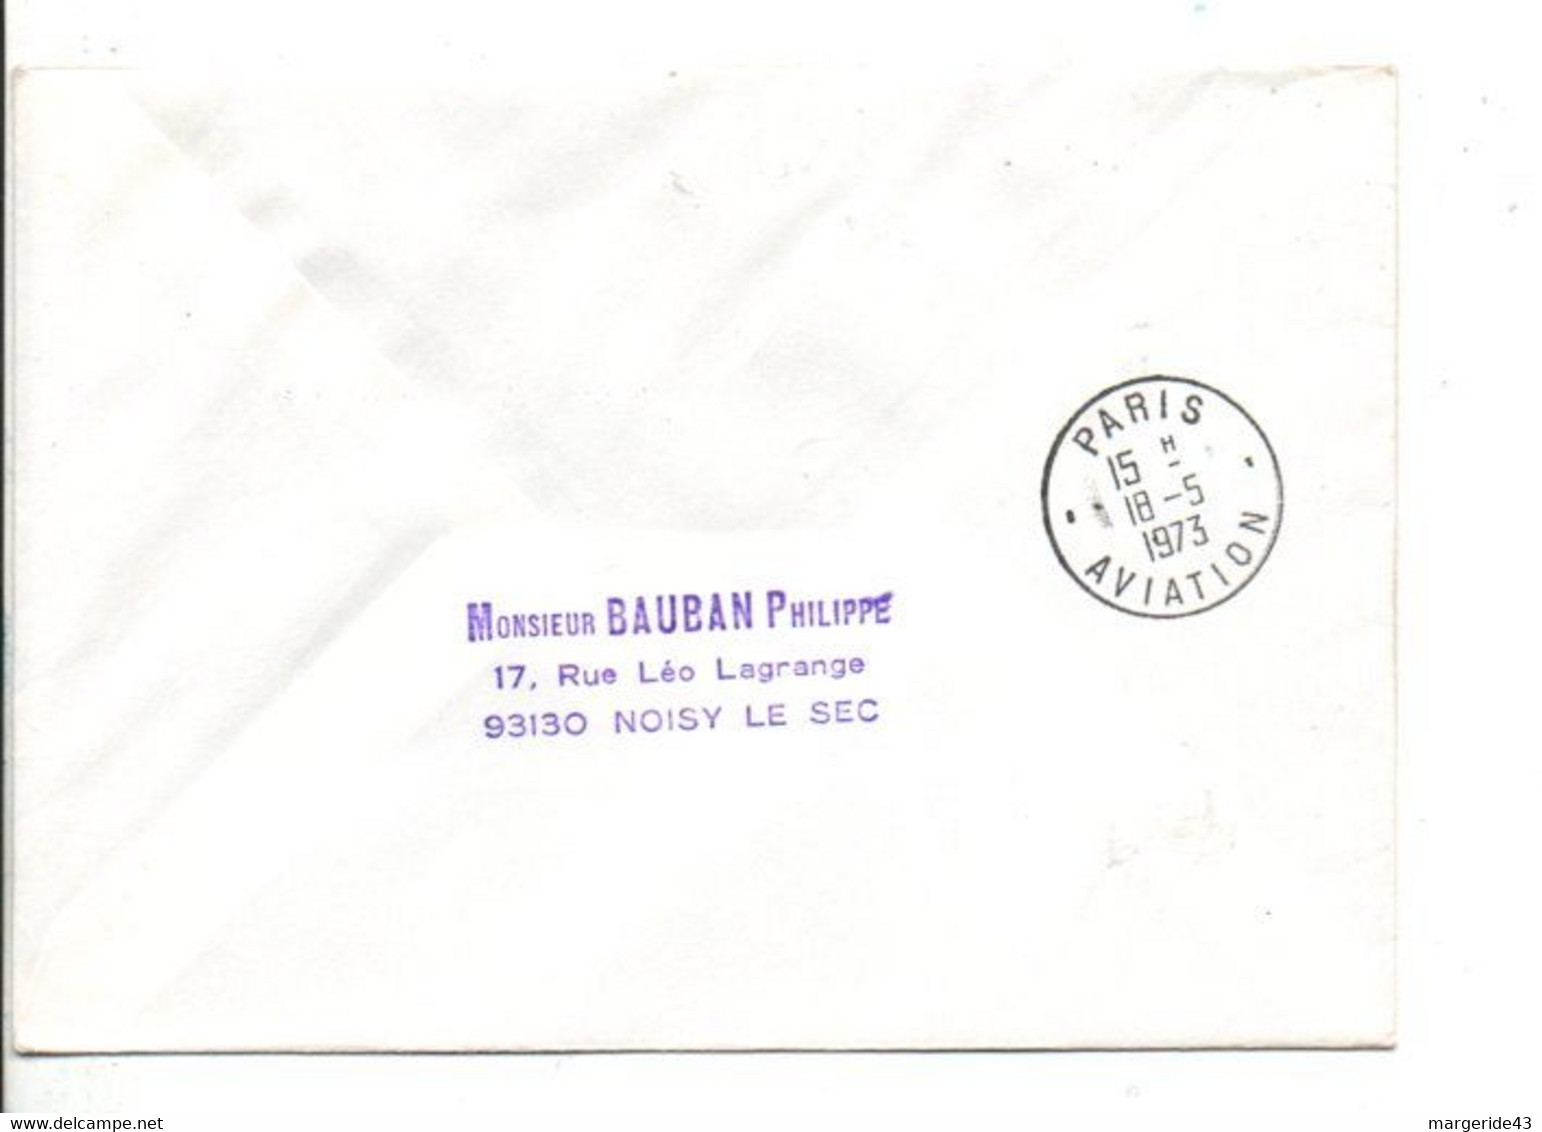 AUTRICHE 1 ER VOL VIENNE-PARIS AIR FRANCE 1973 - Briefe U. Dokumente